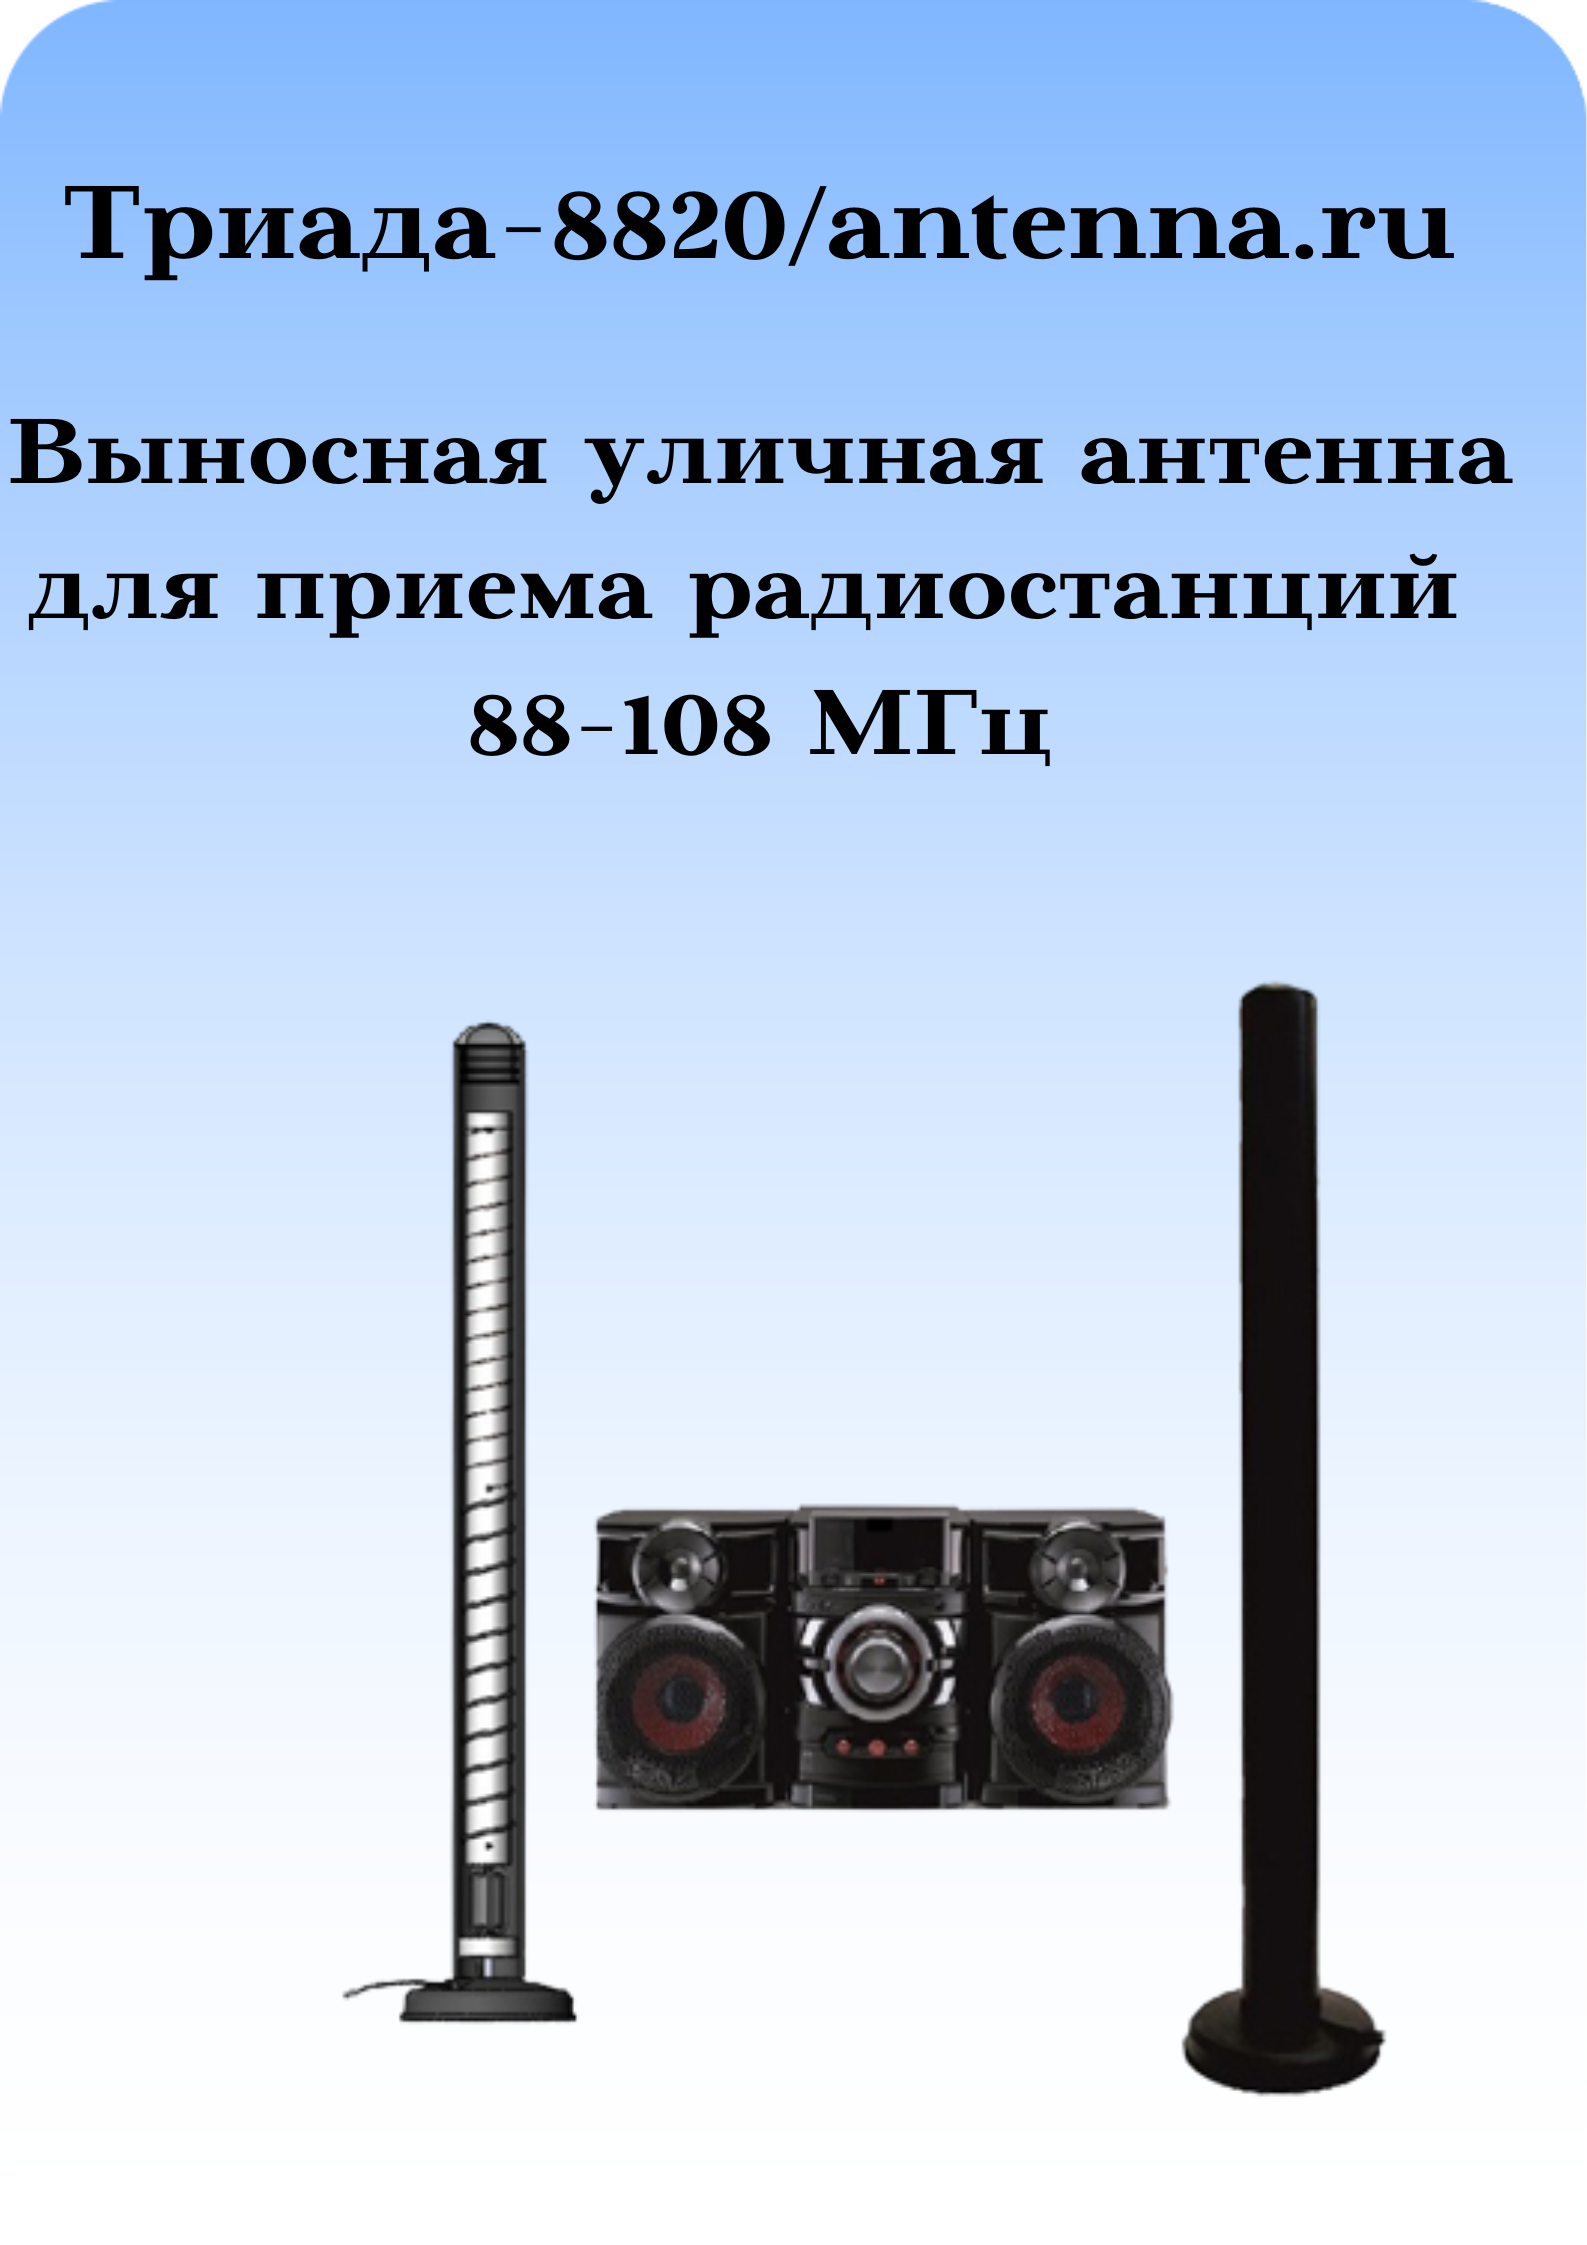 gde-kupit-antennu-dlya-muzikalnogo-centra?-na-antenna.ru--Nhbflf-8820